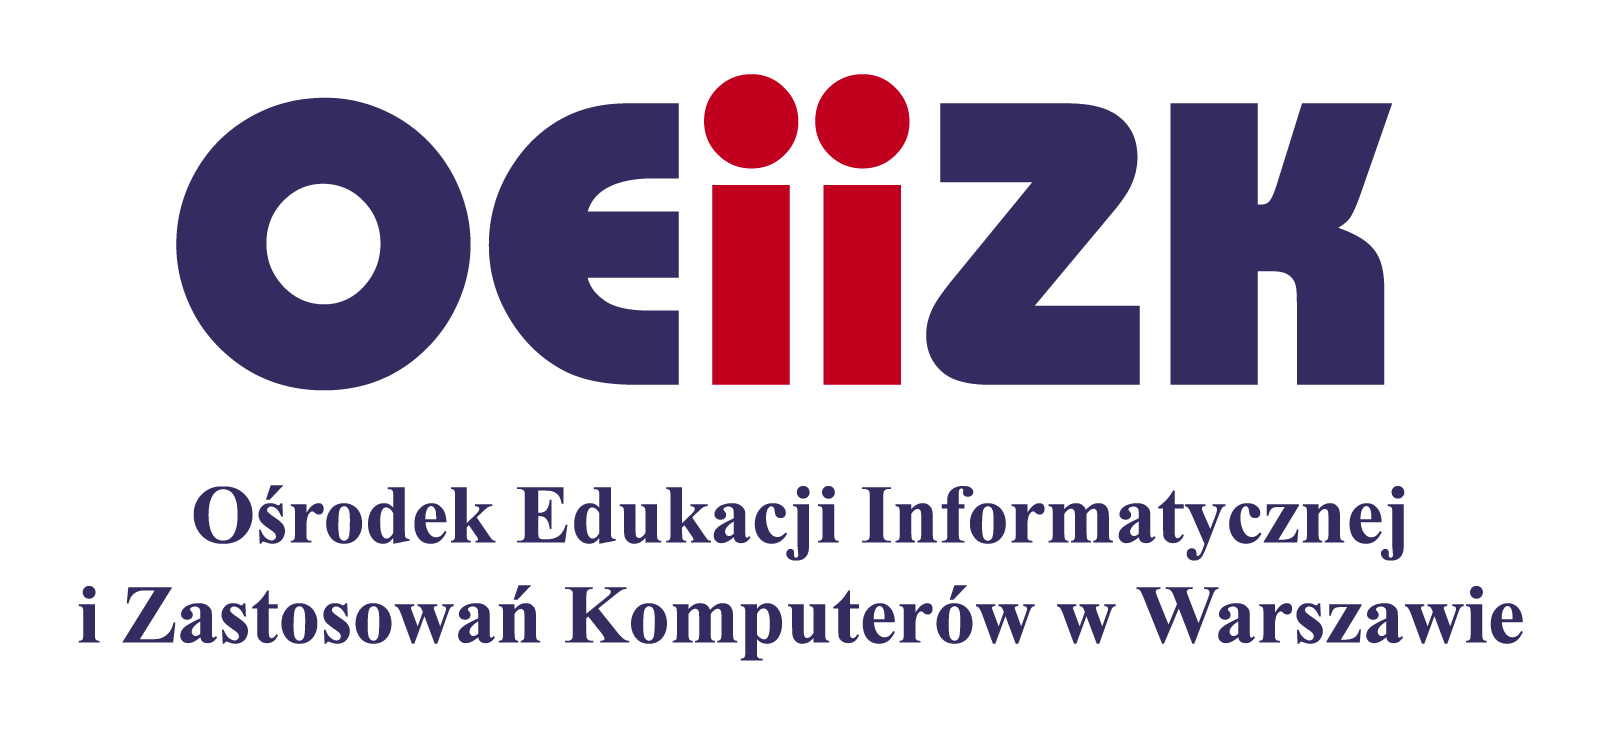 Komputerów w Warszawie na podstawie umowy nr 5/KOG/2016 z dnia 11 lipca 2016 roku. 2. Konkurs przeznaczony jest dla uczniów gimnazjów województwa mazowieckiego.